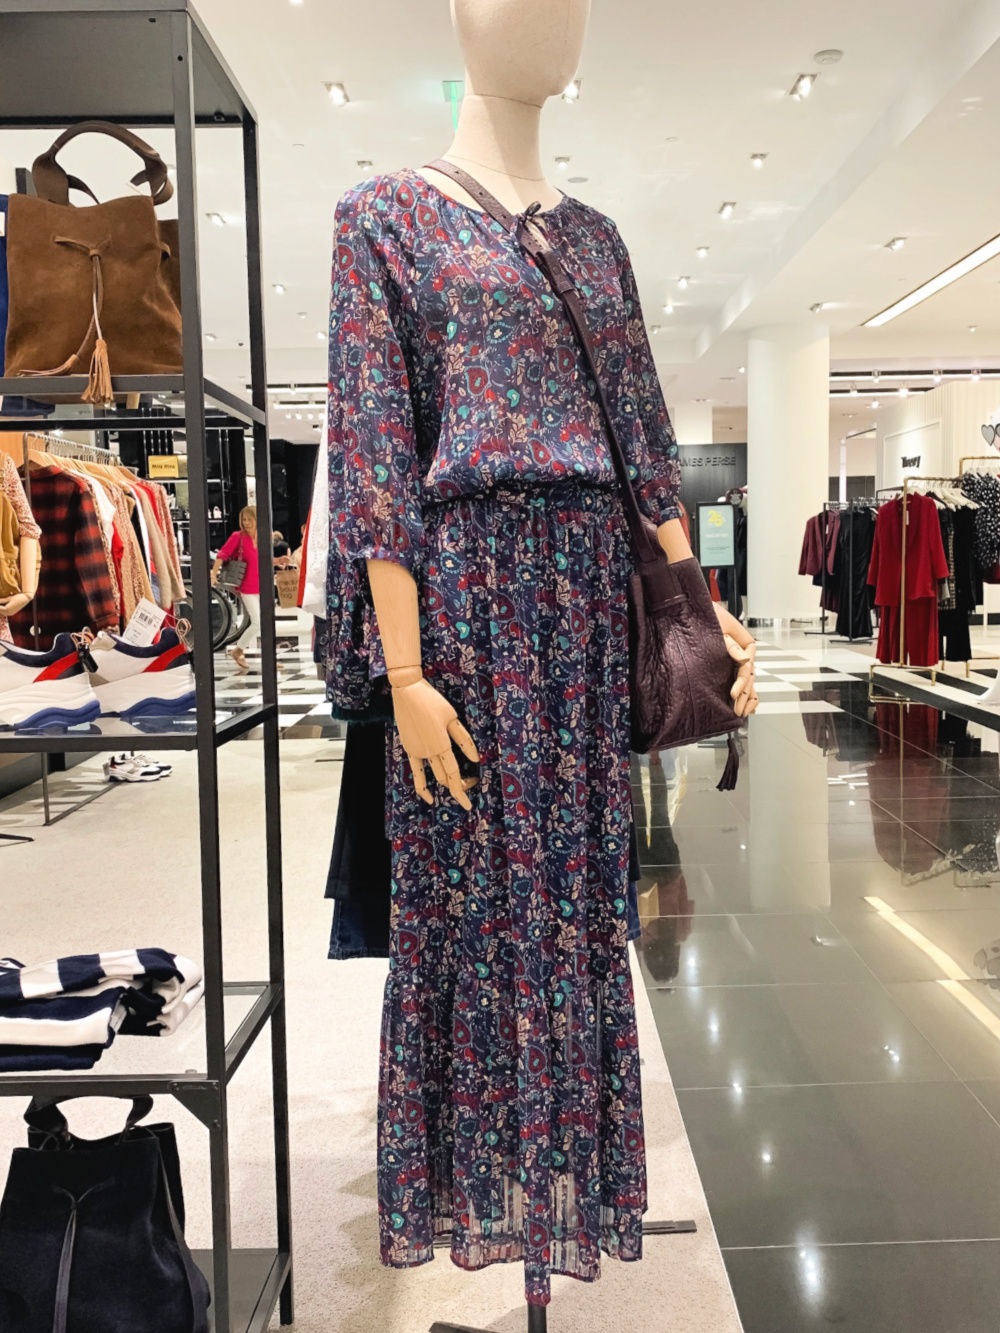 Fall style trends: floral dresses. Gerard Darel floral print dress. Details at une femme d'un certain age.